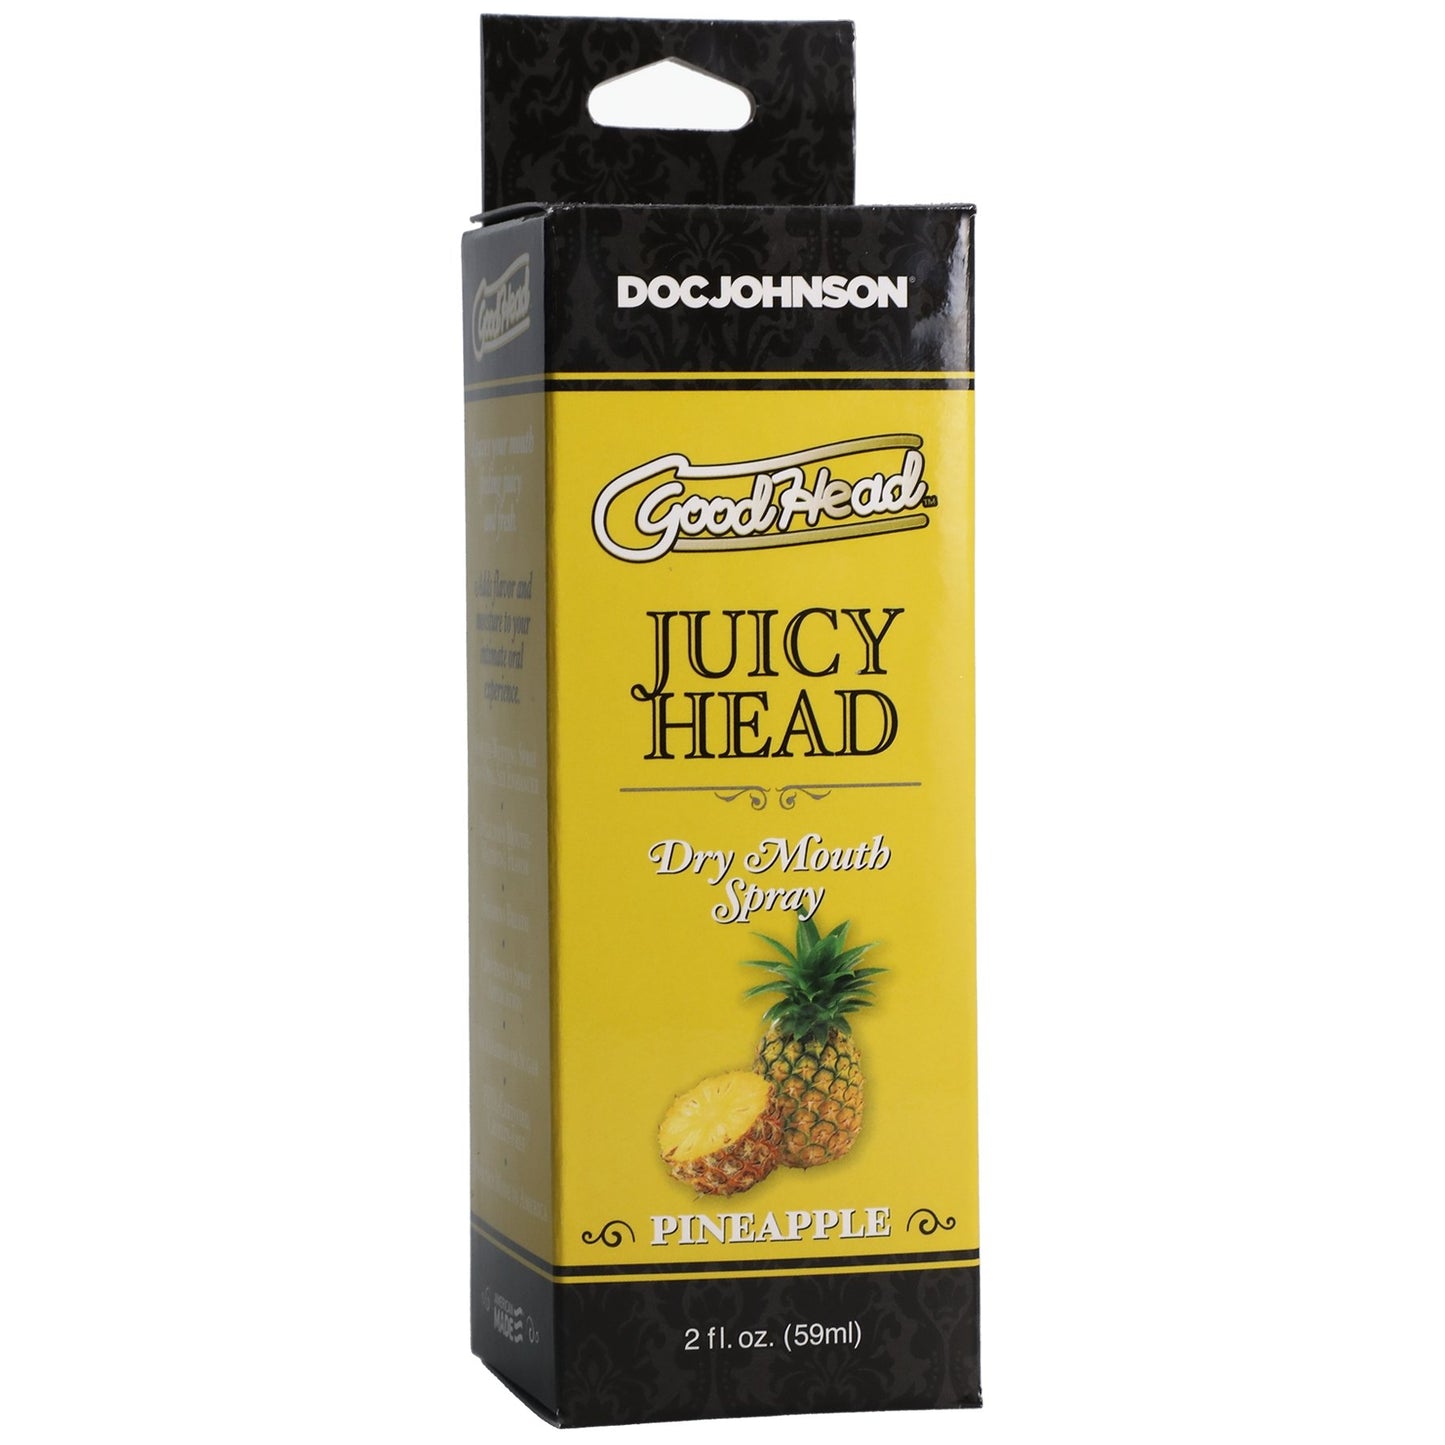 GoodHead Juicy Head - Pineapple - The Pleasure Is Mine